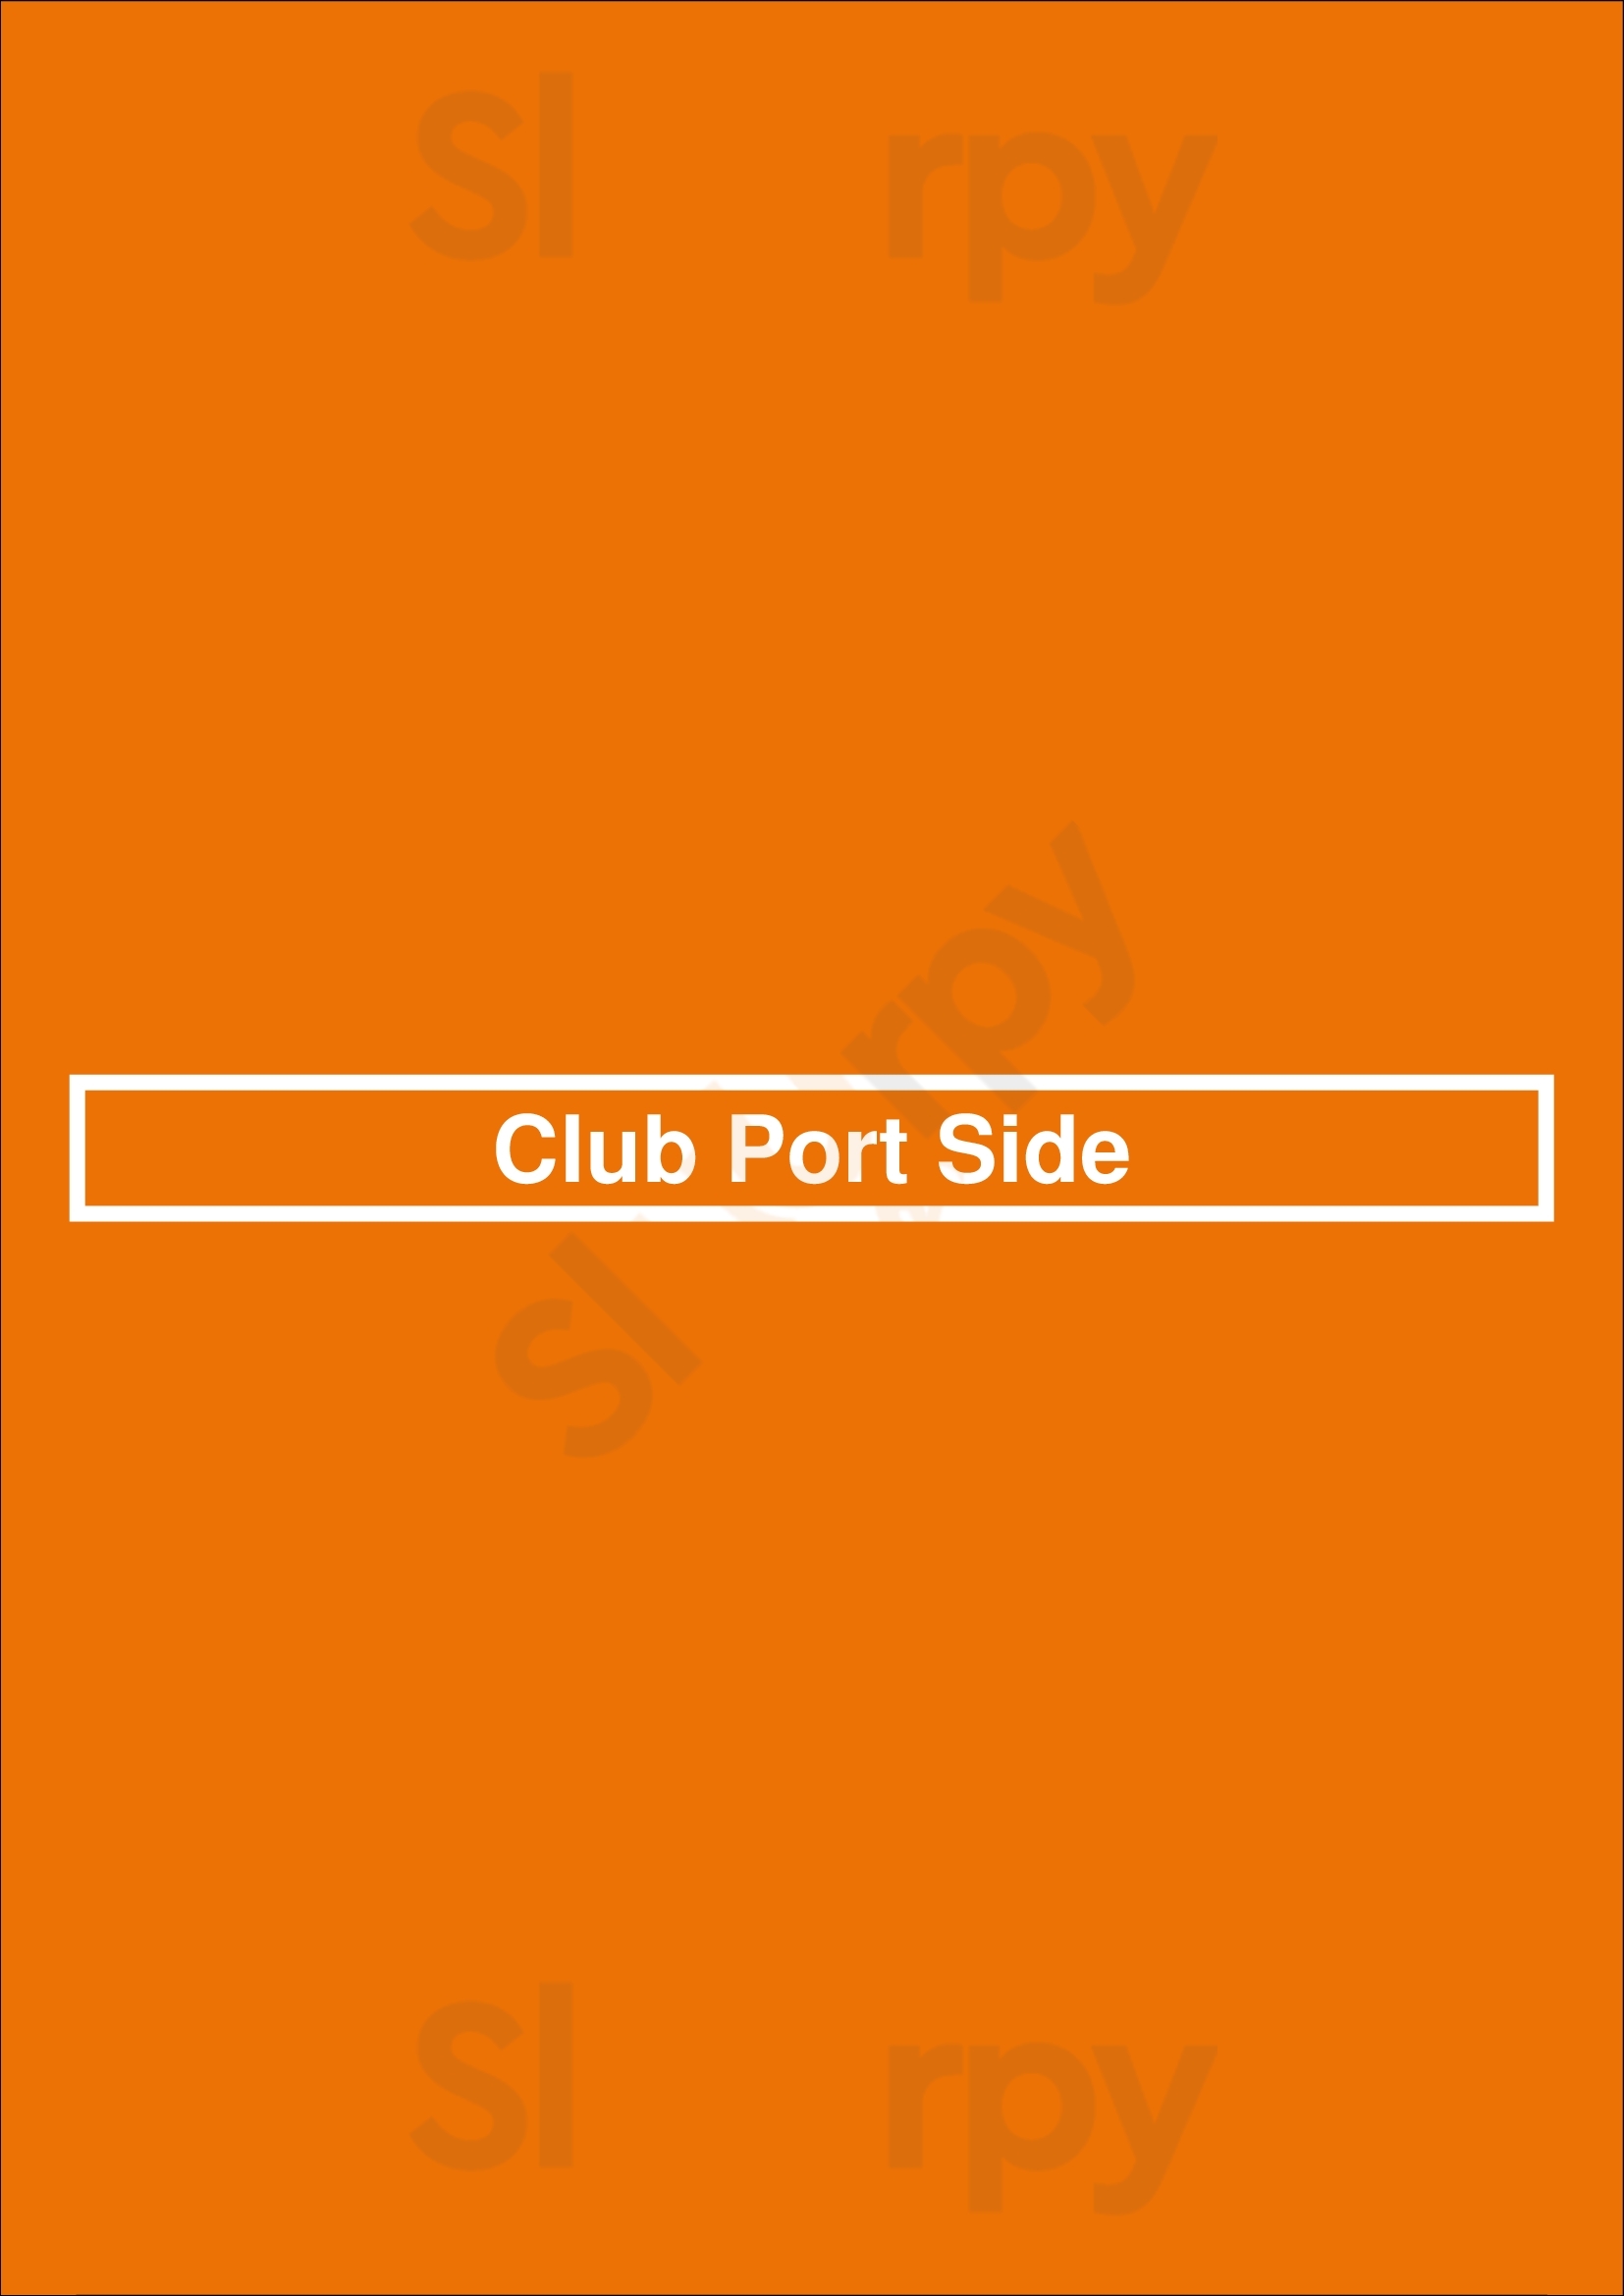 Club Port Side Lelystad Menu - 1